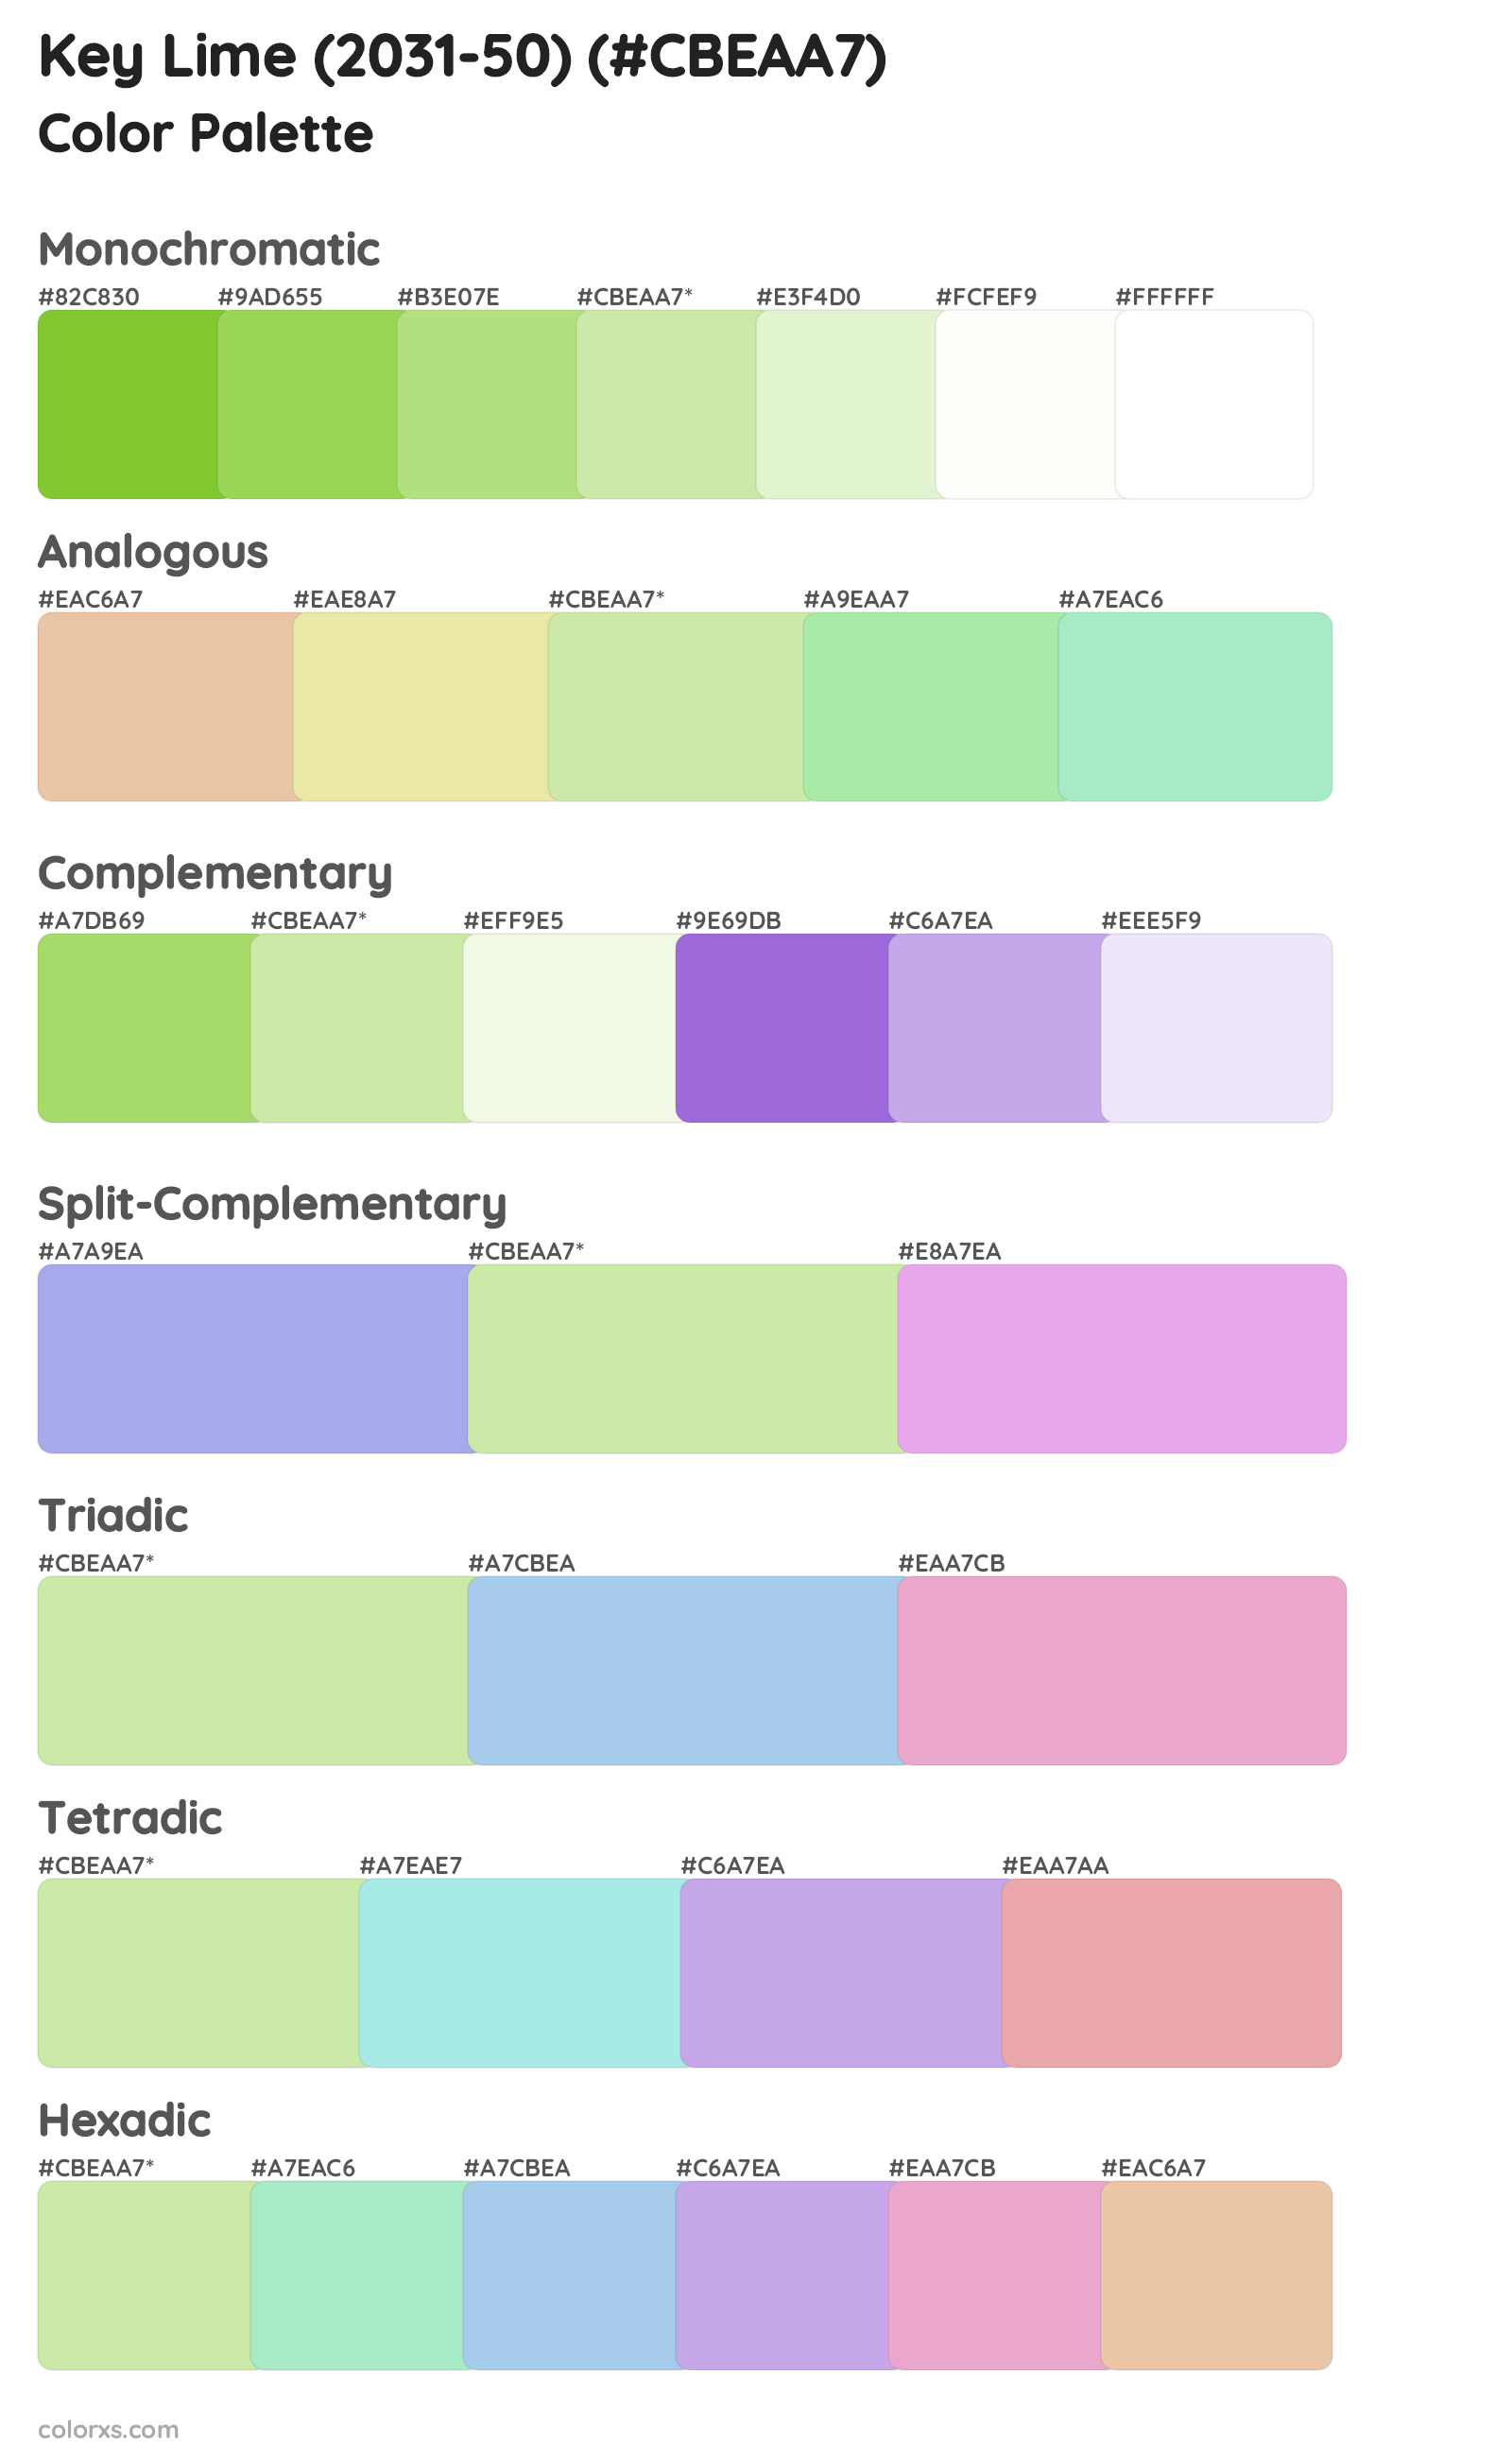 Key Lime (2031-50) Color Scheme Palettes